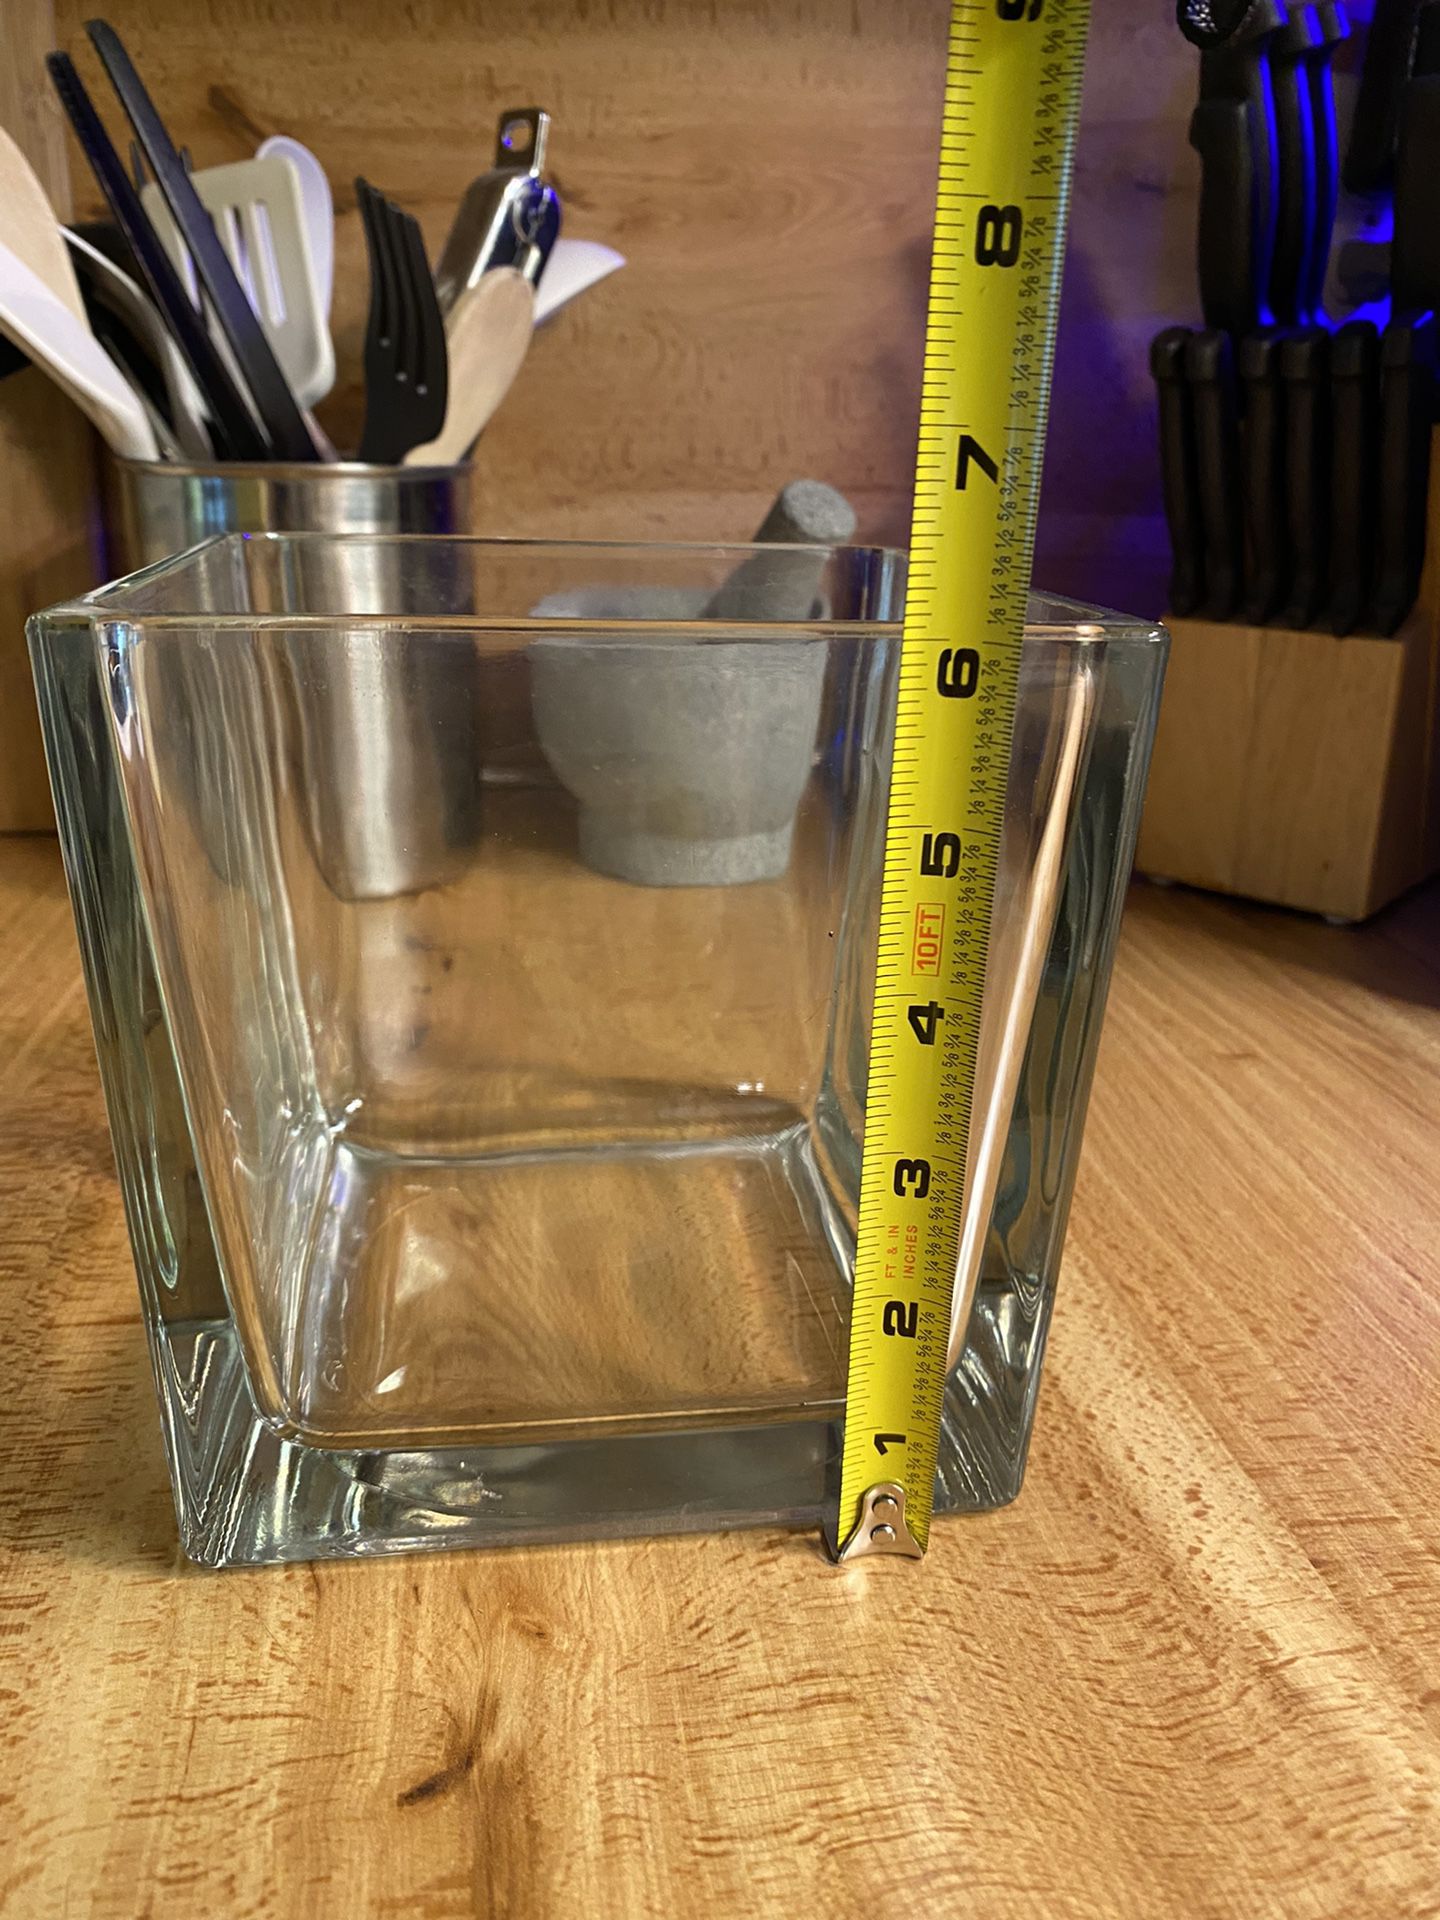 (31) Glass Square Vases - No Cracks